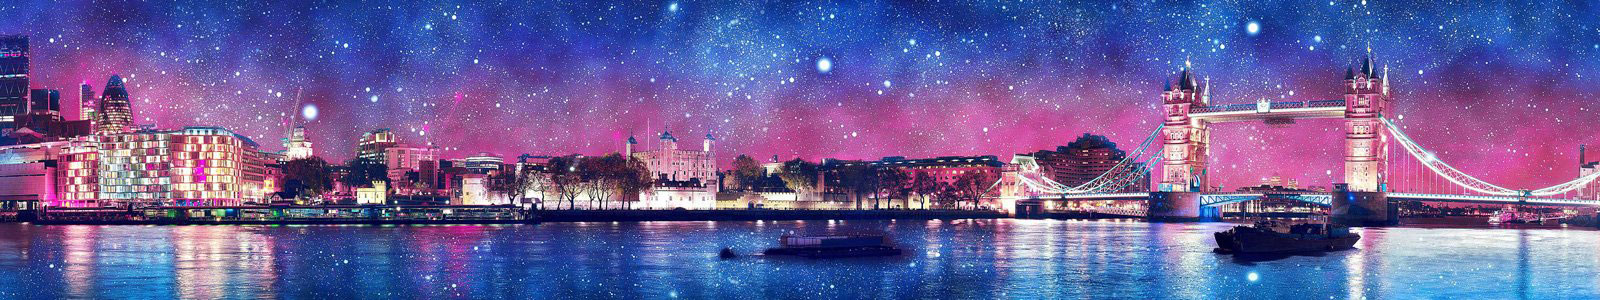 №6369 - Звездная ночь в Лондоне с эффектом HDR